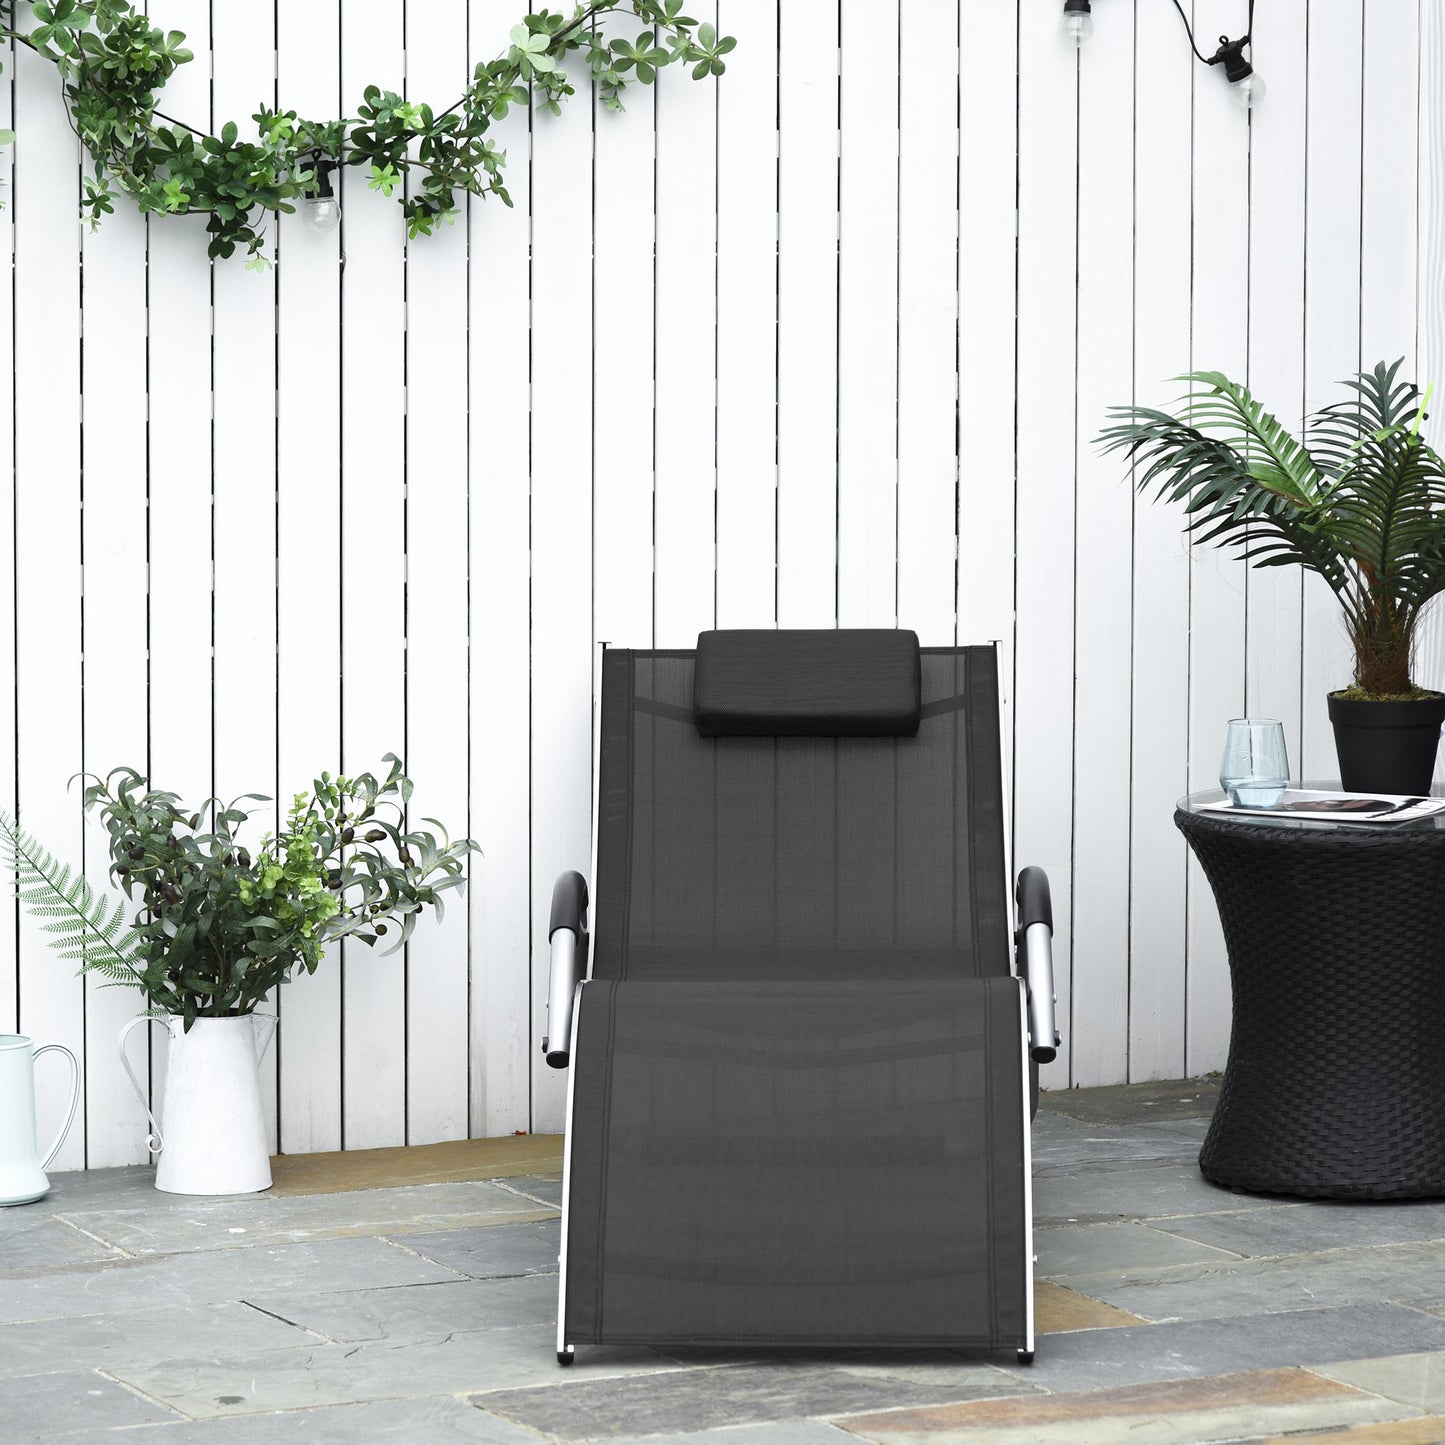 Nancy's Fernandina Beach Garden Chair - Lounger - Aluminum - Gray/Black - 160 x 60 x 65 cm